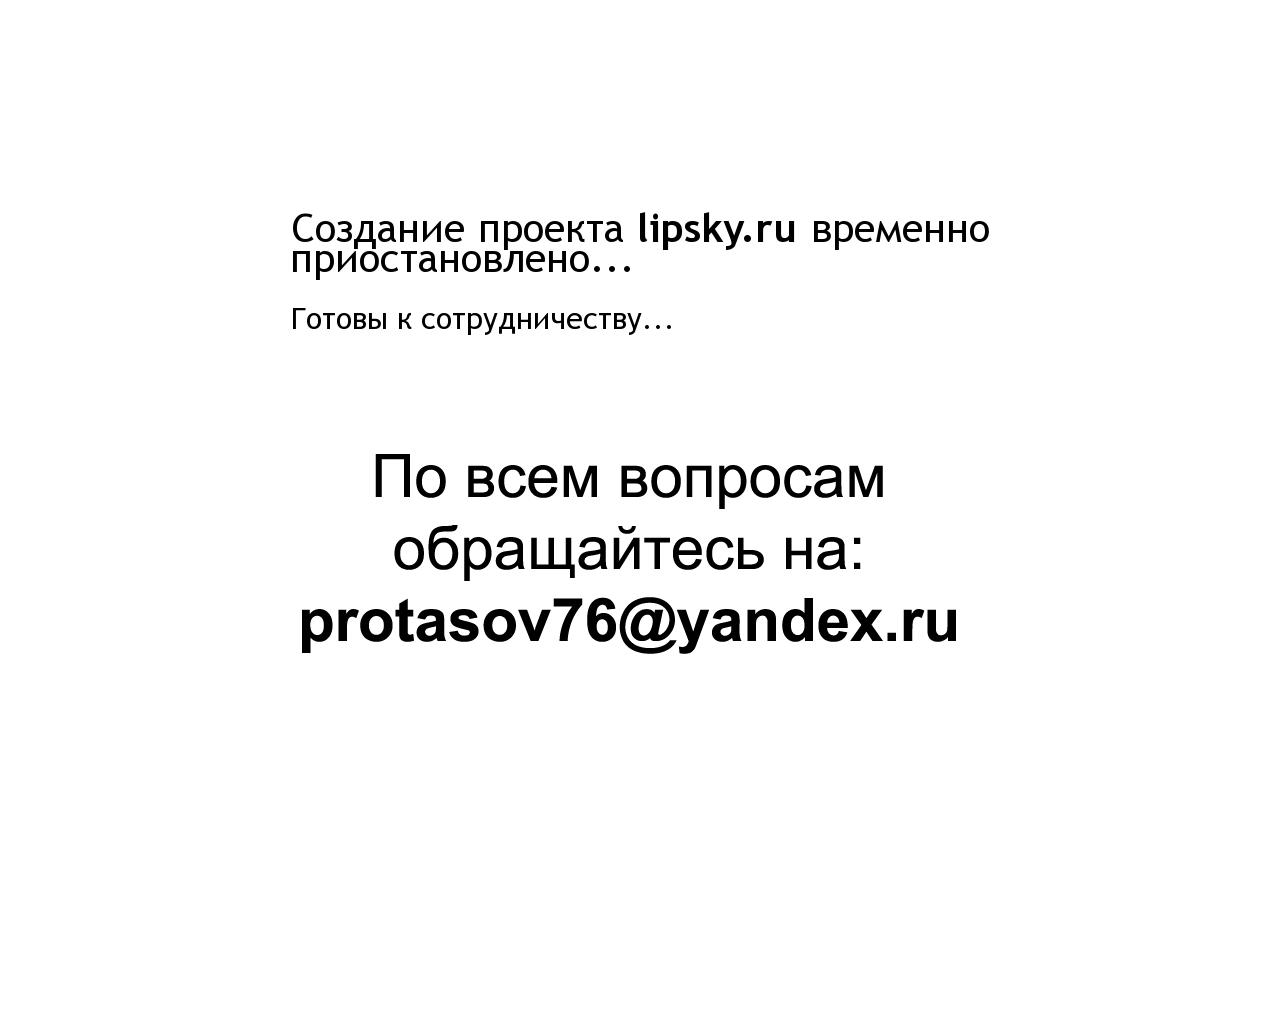 Изображение сайта lipsky.ru в разрешении 1280x1024